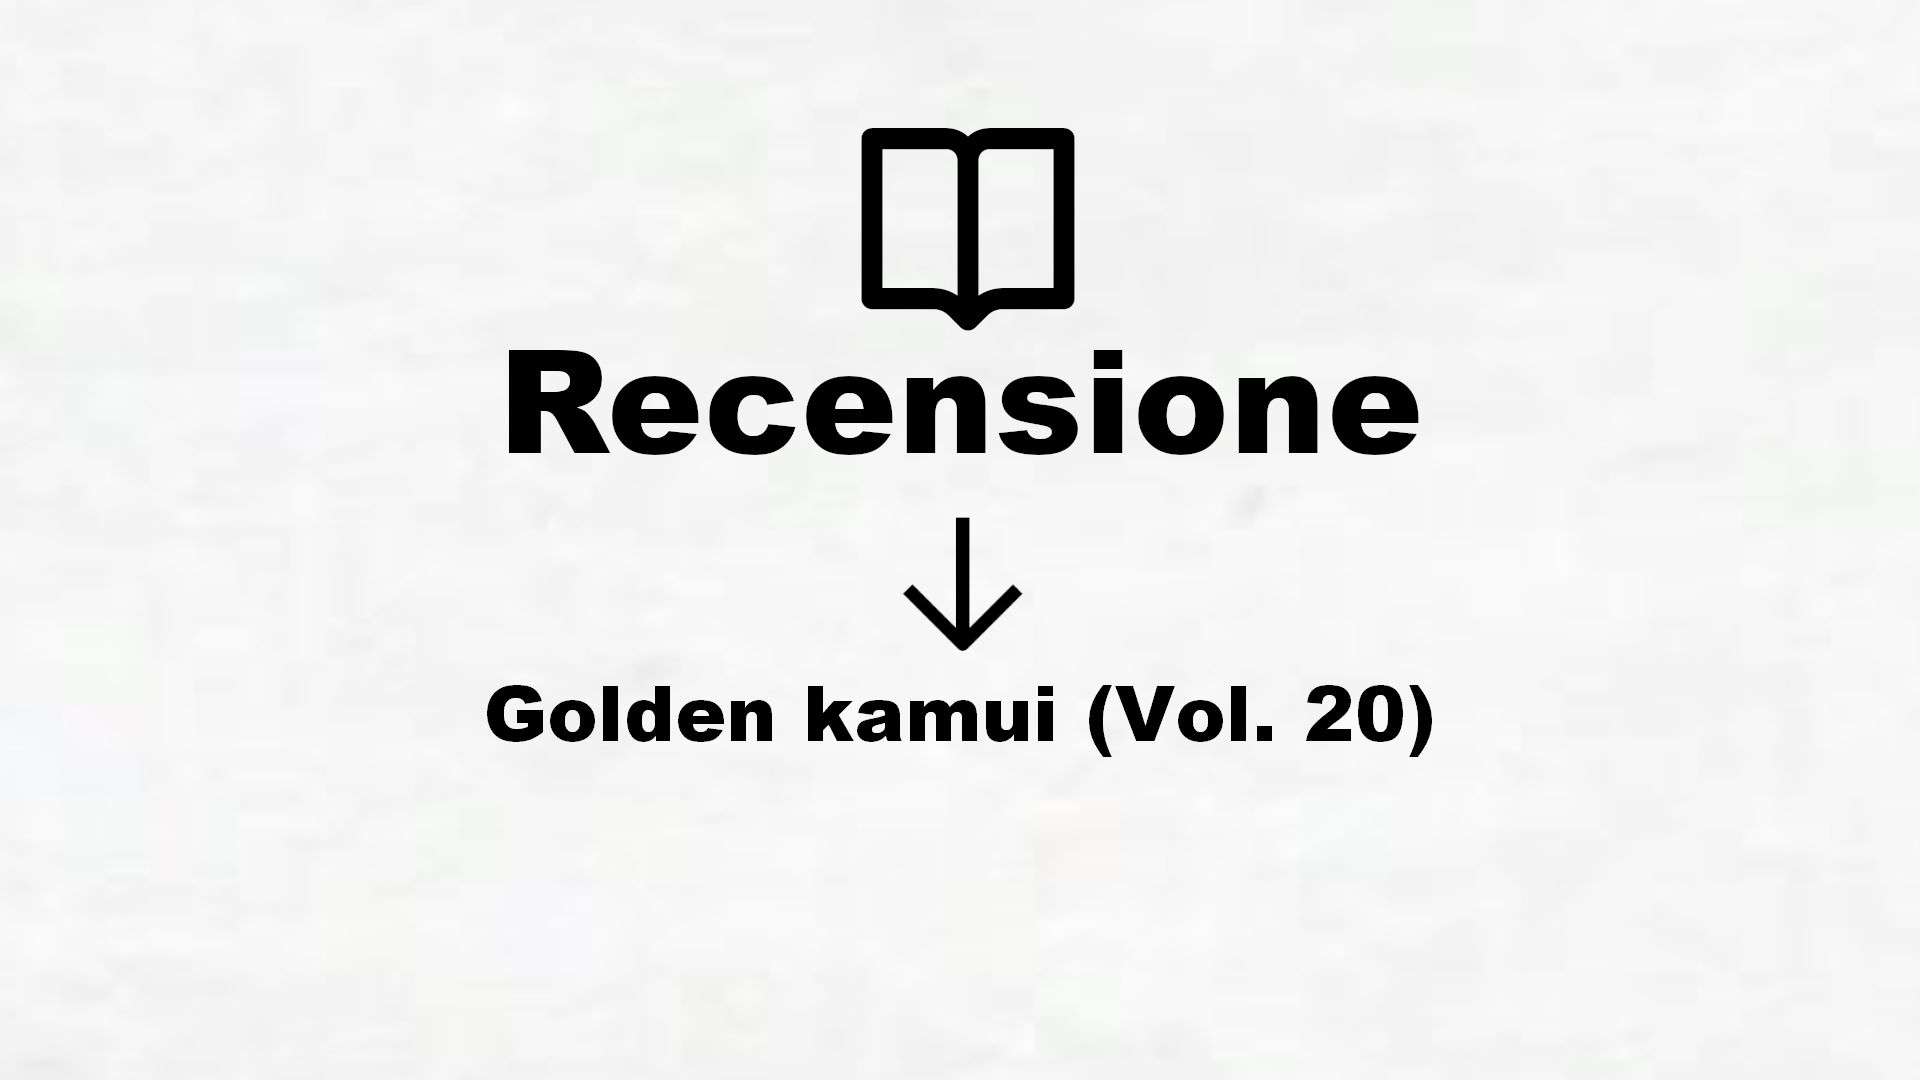 Golden kamui (Vol. 20) – Recensione Libro